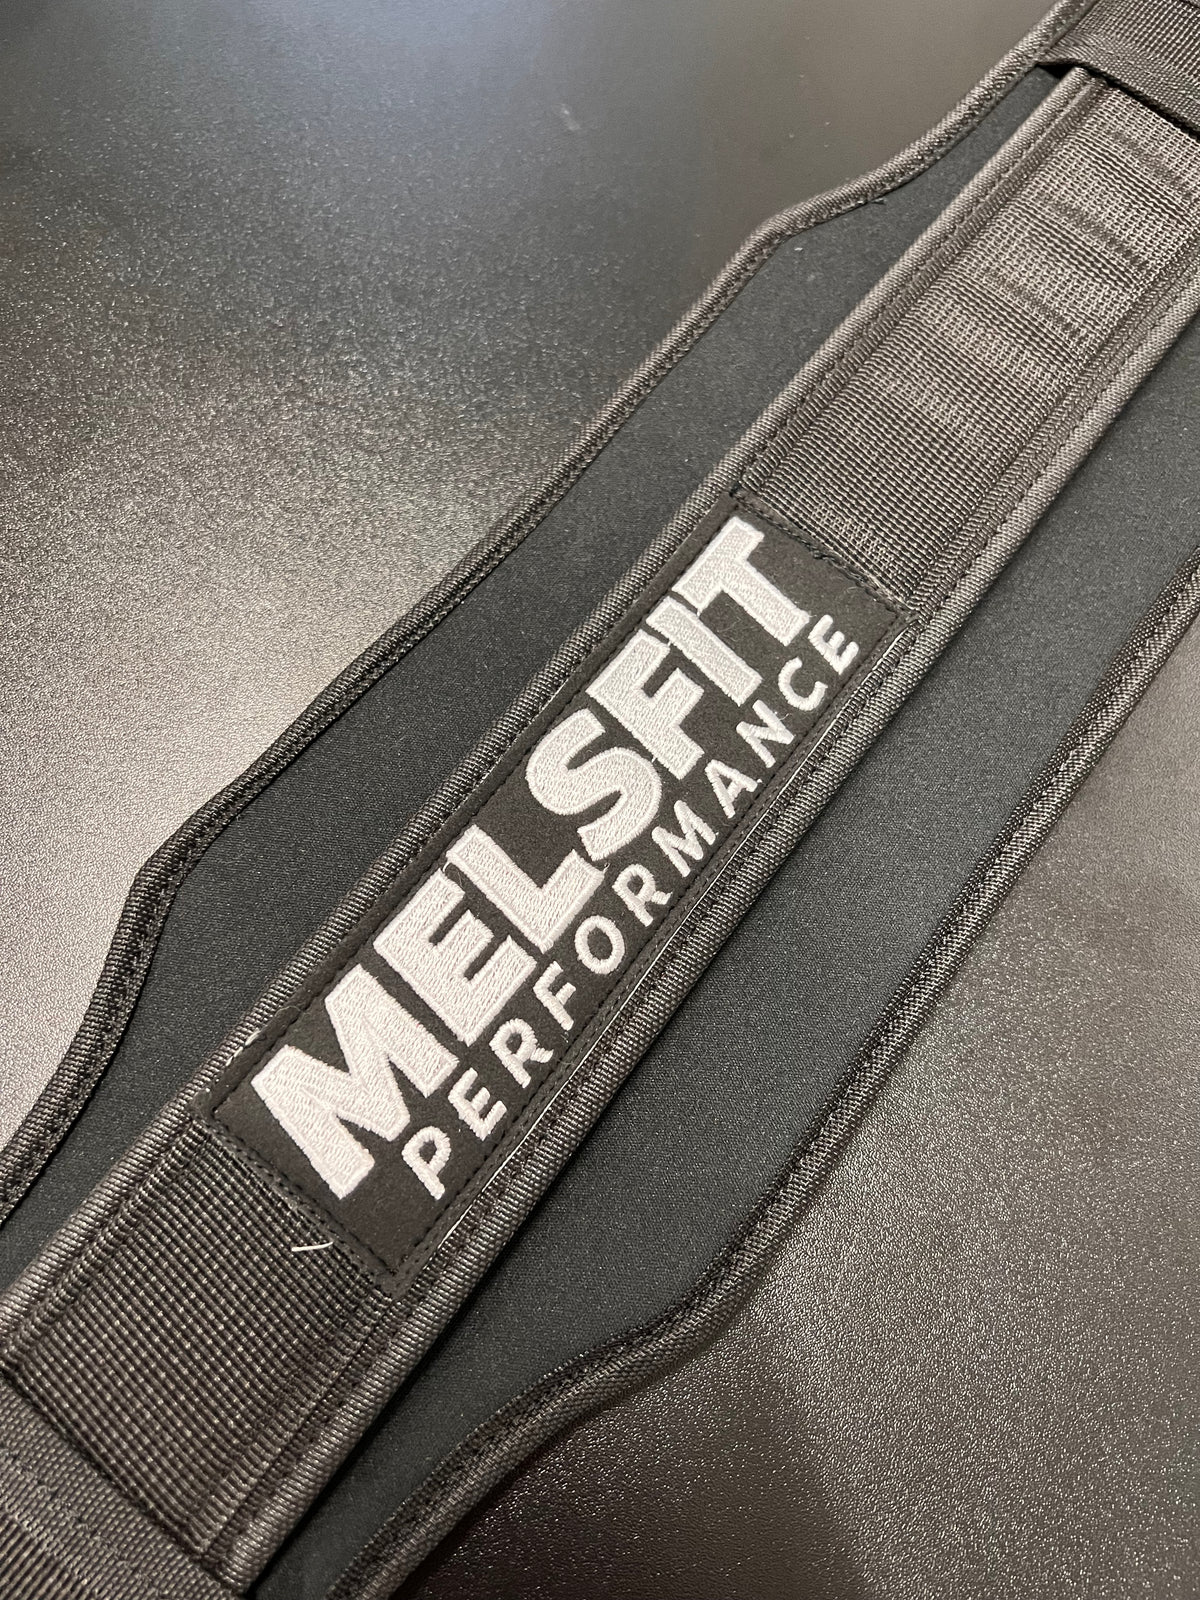 Melsfit Performance - Two Part Belt